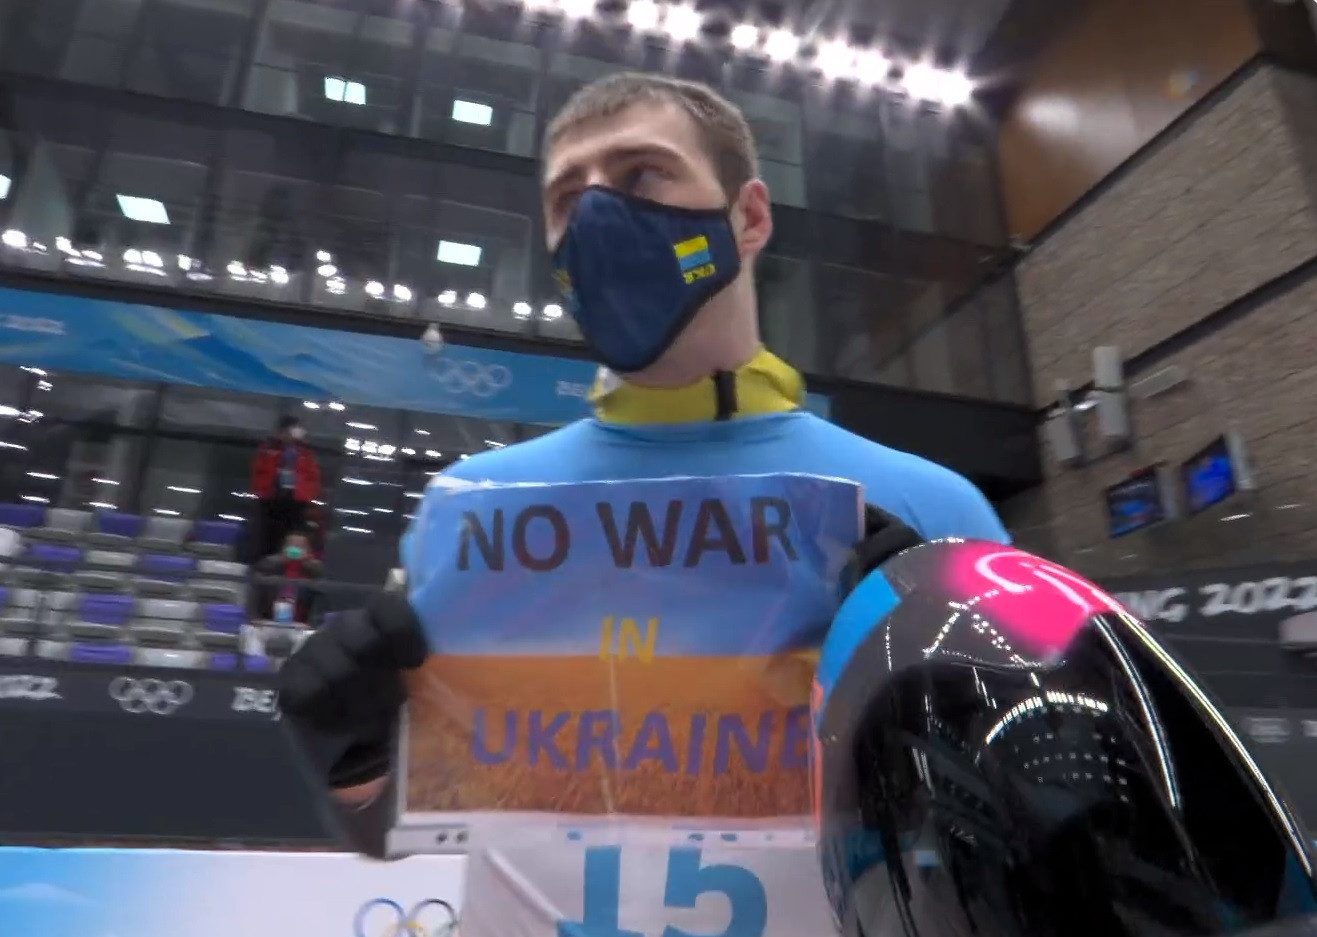 Vladyslav Heraskevych displayed a banner, calling for "No War in Ukraine" during Beijing 2022 ©IOC